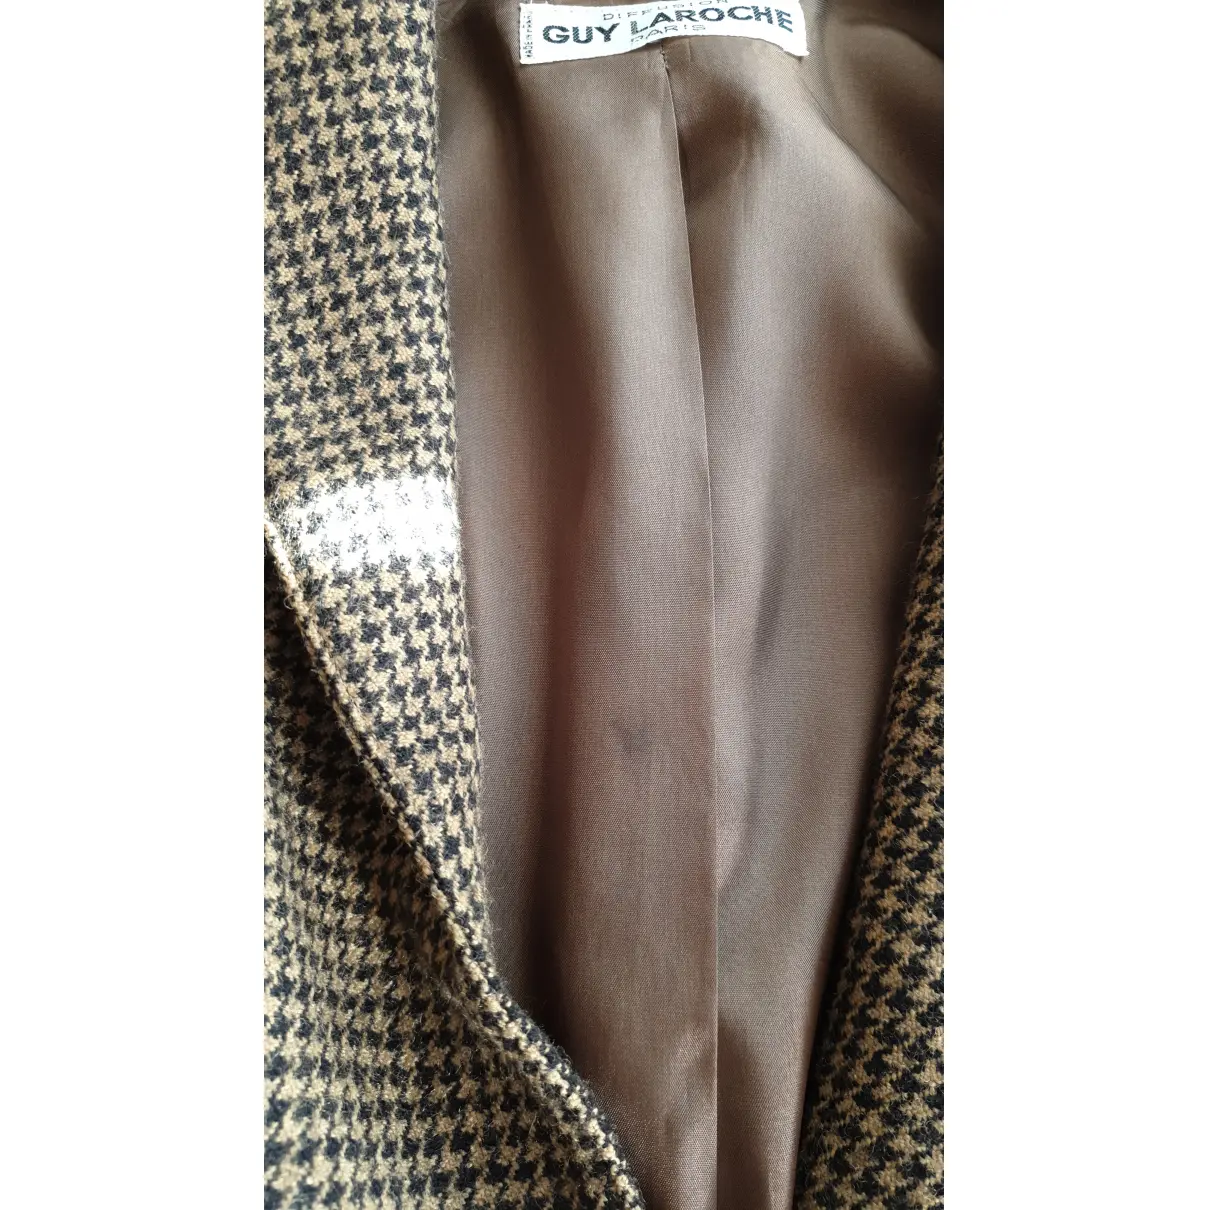 Wool suit jacket Guy Laroche - Vintage